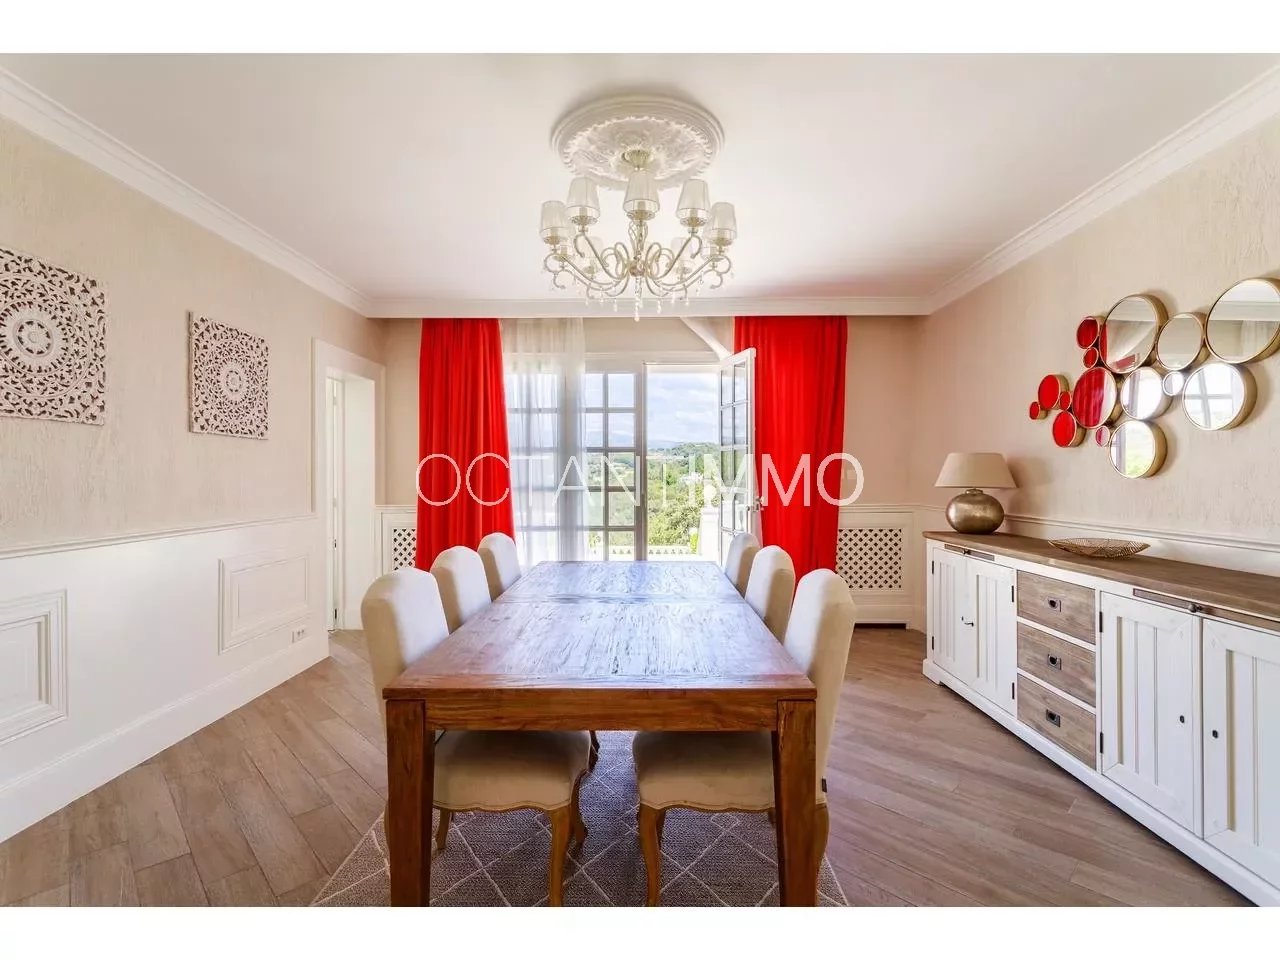 Maison  6 Rooms 263.32m2  for sale  2 150 000 €